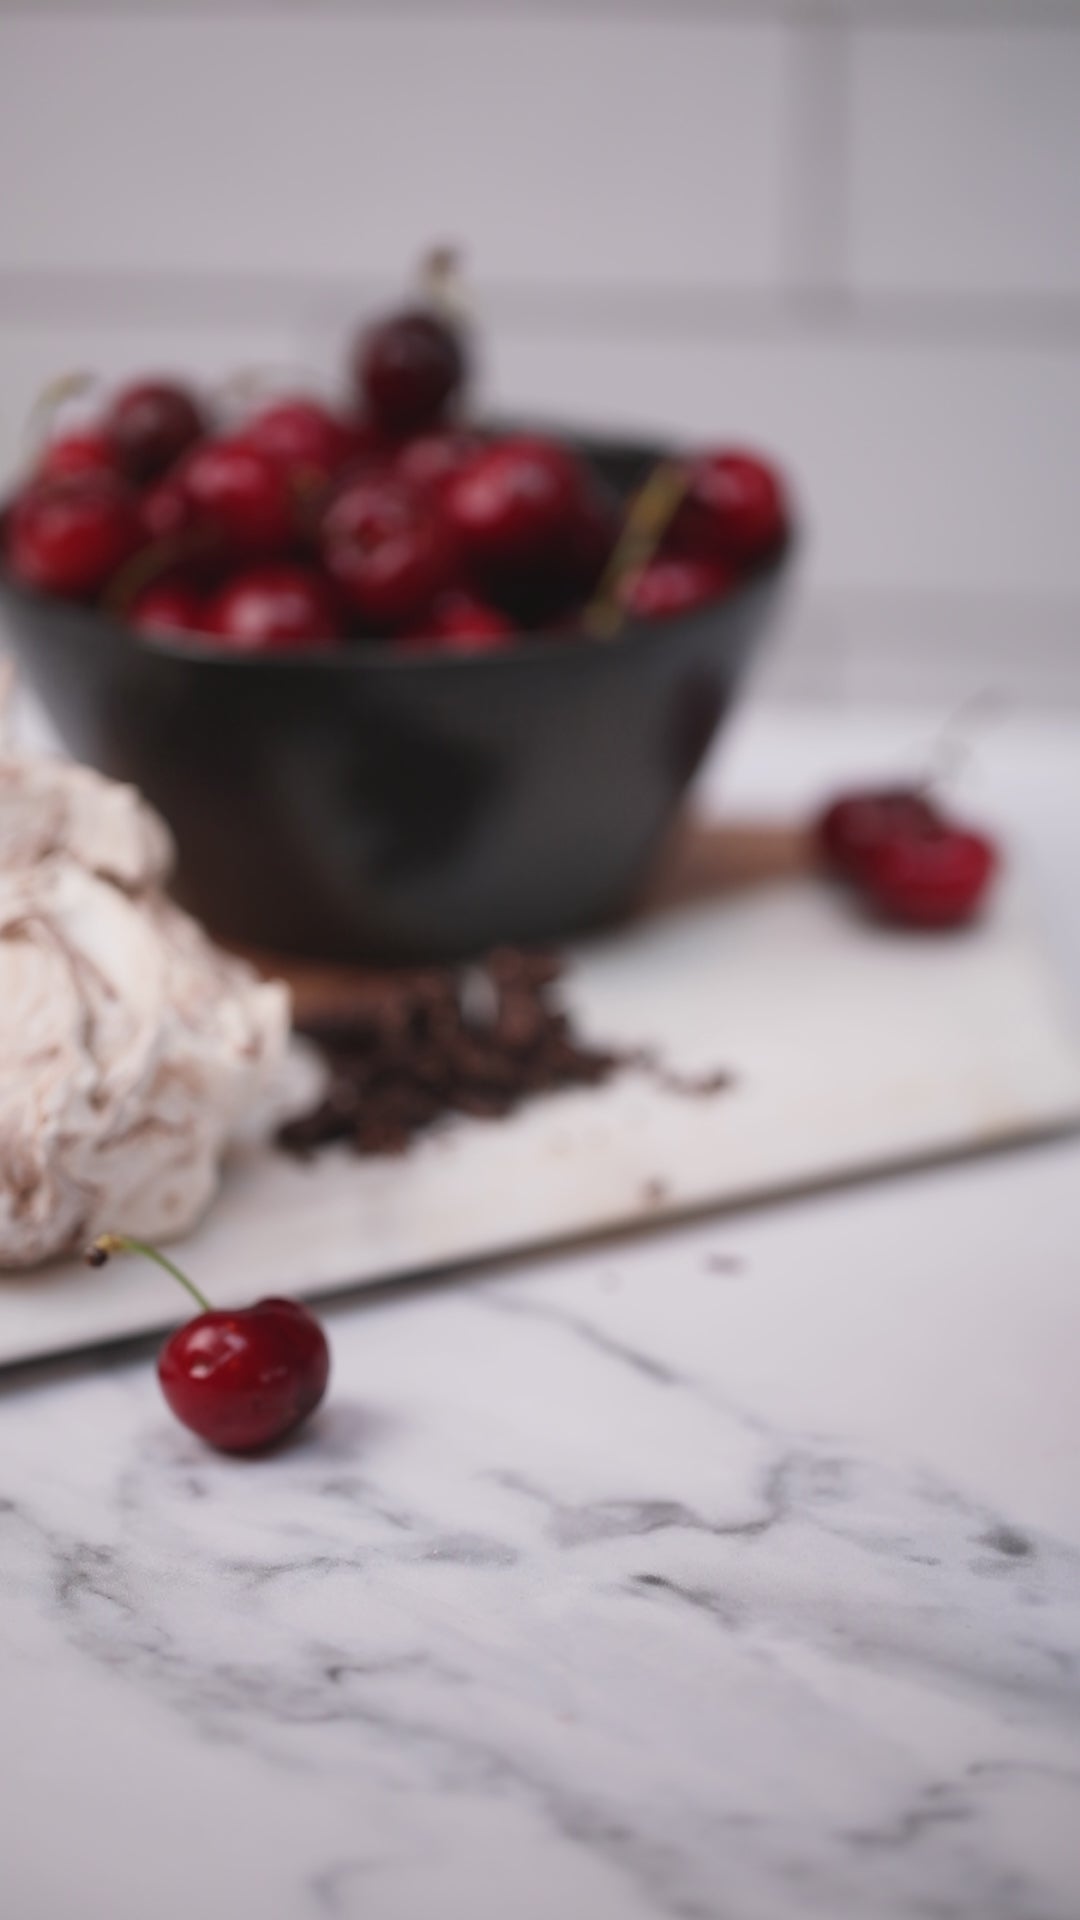 Limited Edition Morello Cherry Preserve